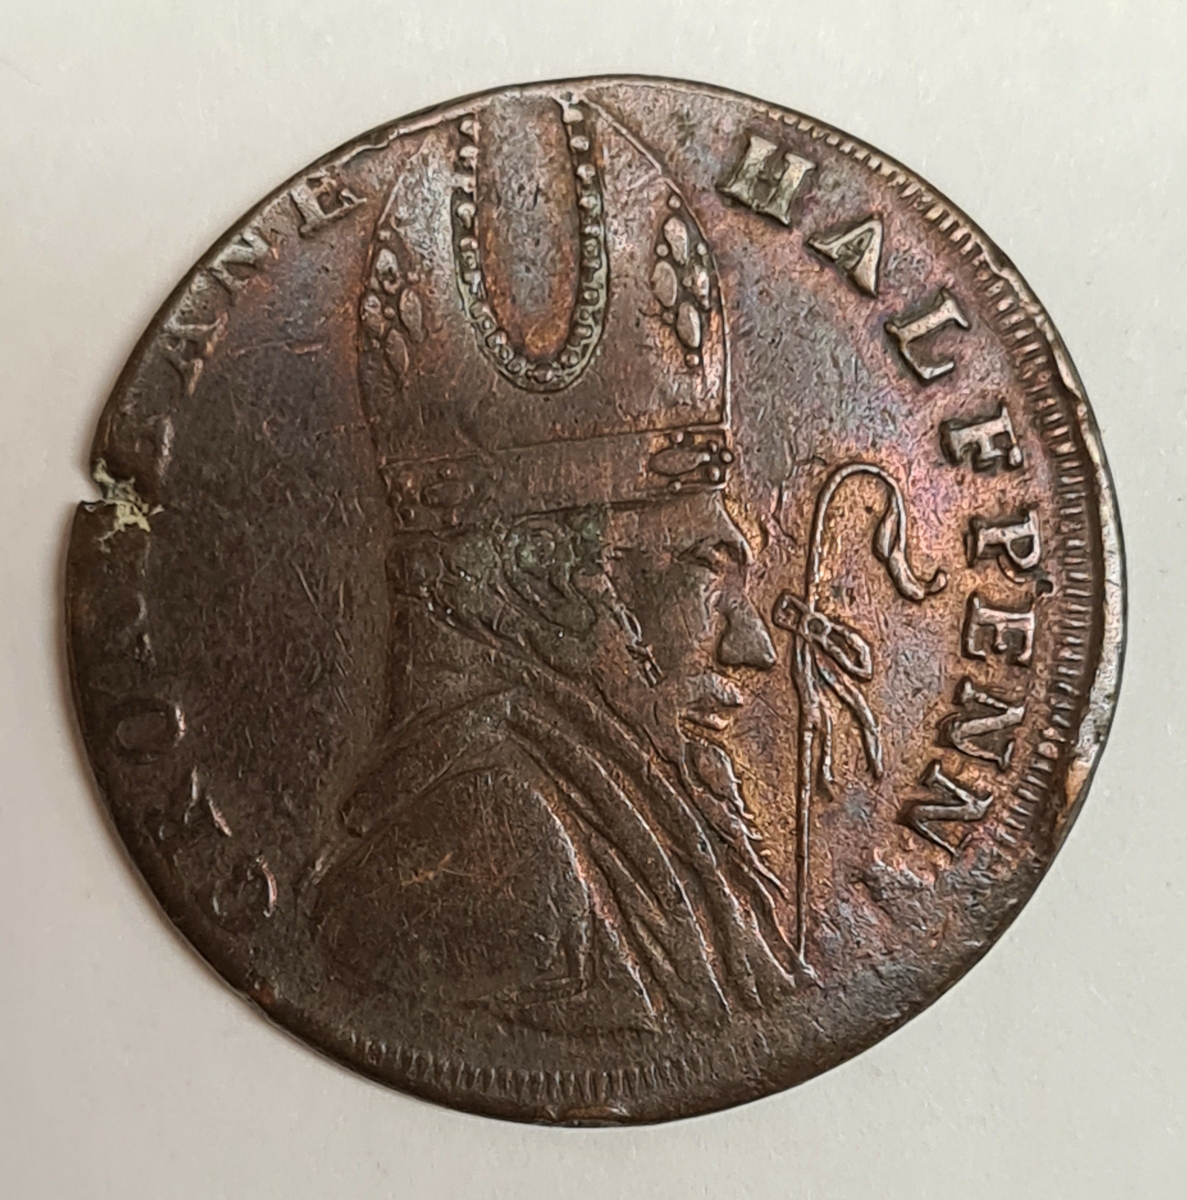 Ett mynt från Irland.
½ Penny, 1789

Tillsida:
CRONEBANE HALFPENNY

Frånsida:
ASSOCIATED IRISH MINERS ARMS
1789